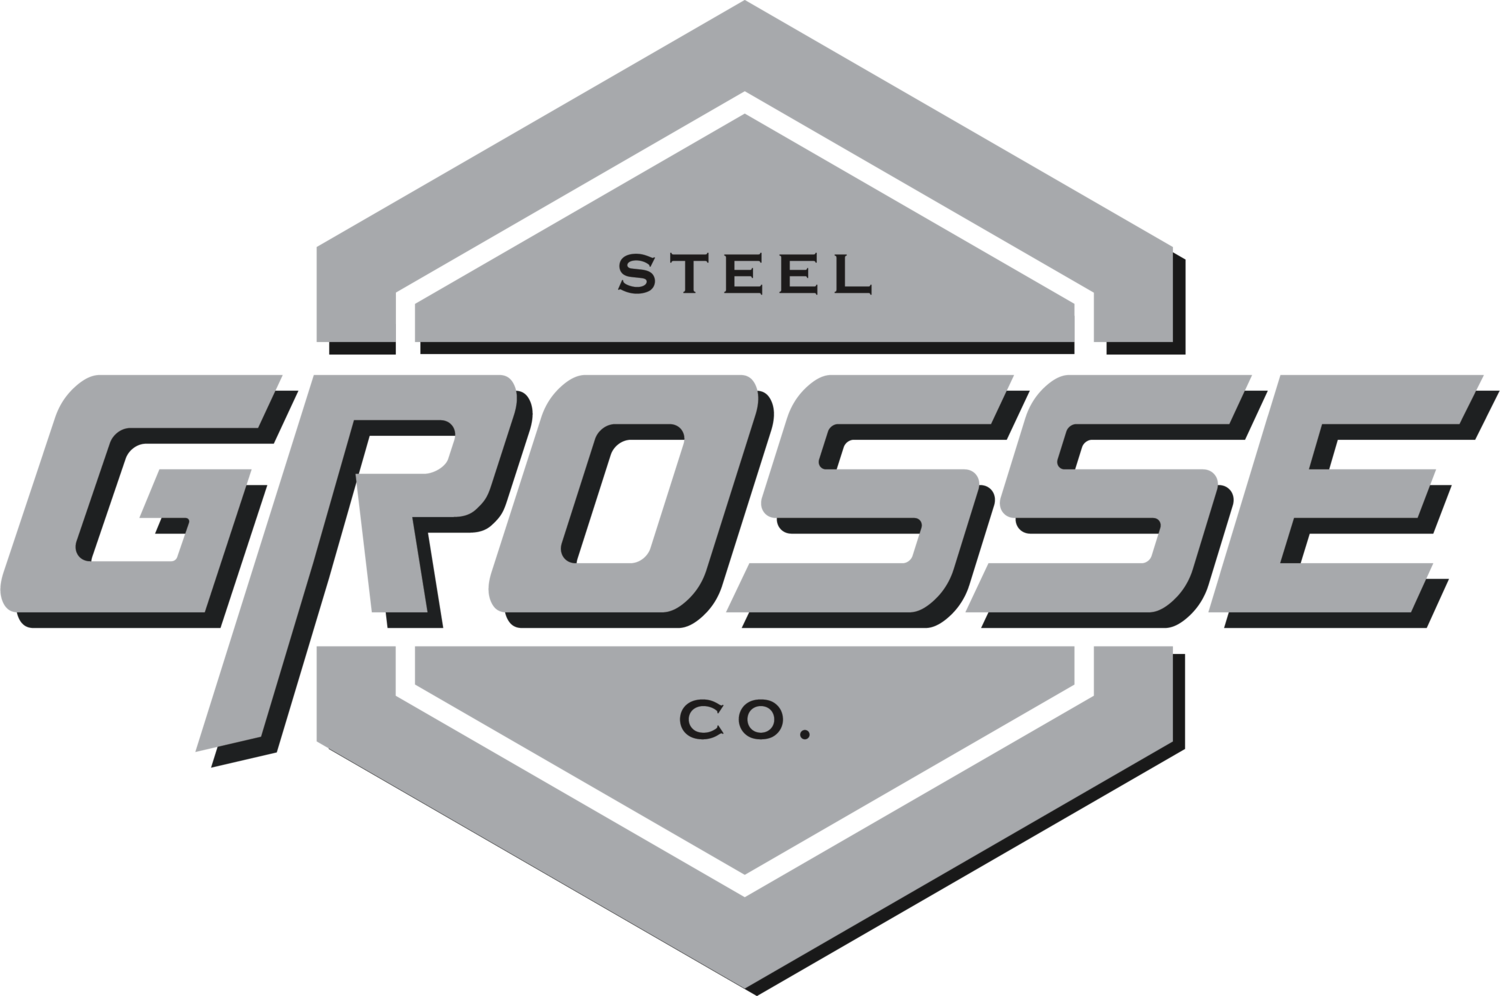 Grosse Steel  Co.